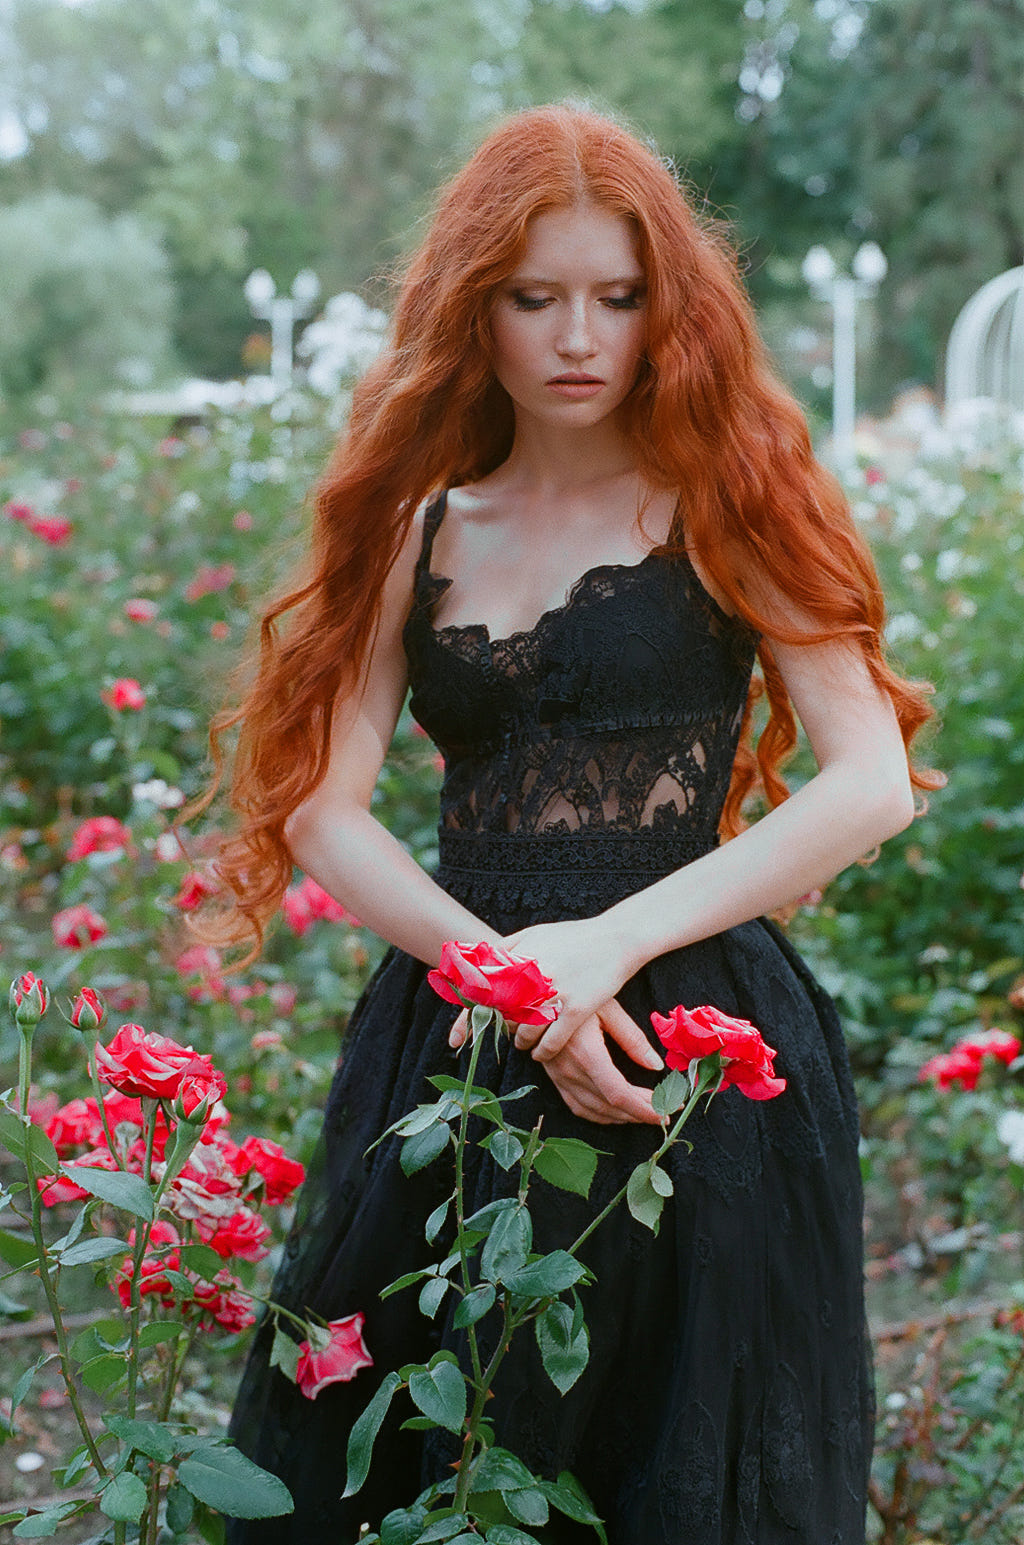 Фото Рыжеволосая девушка с опущенными глазами стоит среди кустов роз, фотограф Ekaterina Skobel